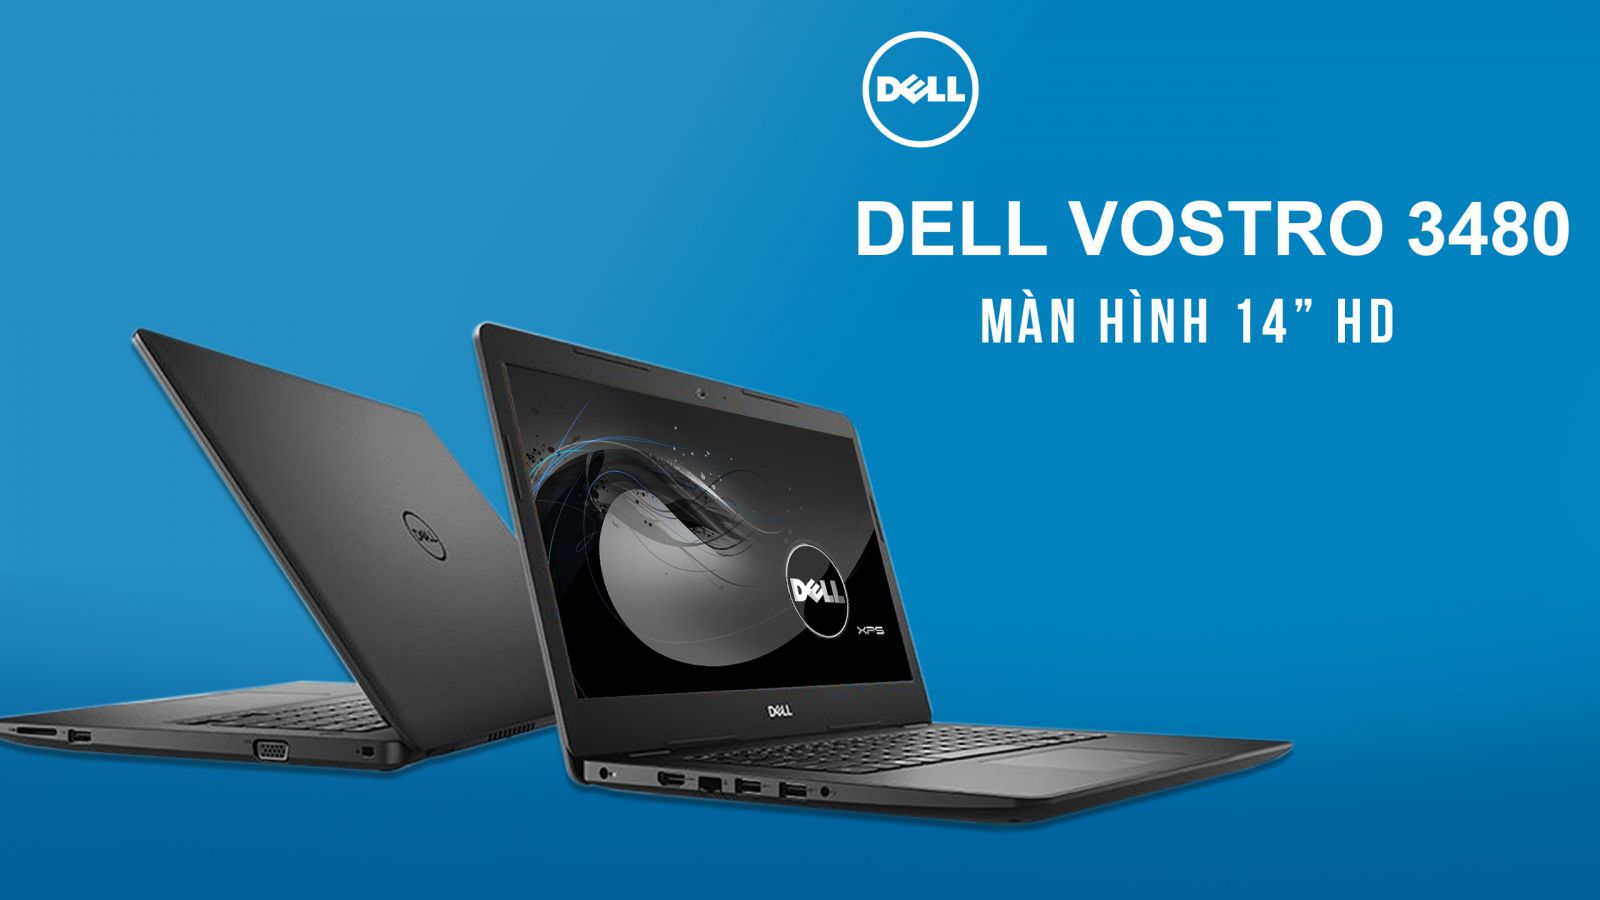 Lựa chọn Dell Vostro V3480 70187647 bạn sẽ không phải hối hận